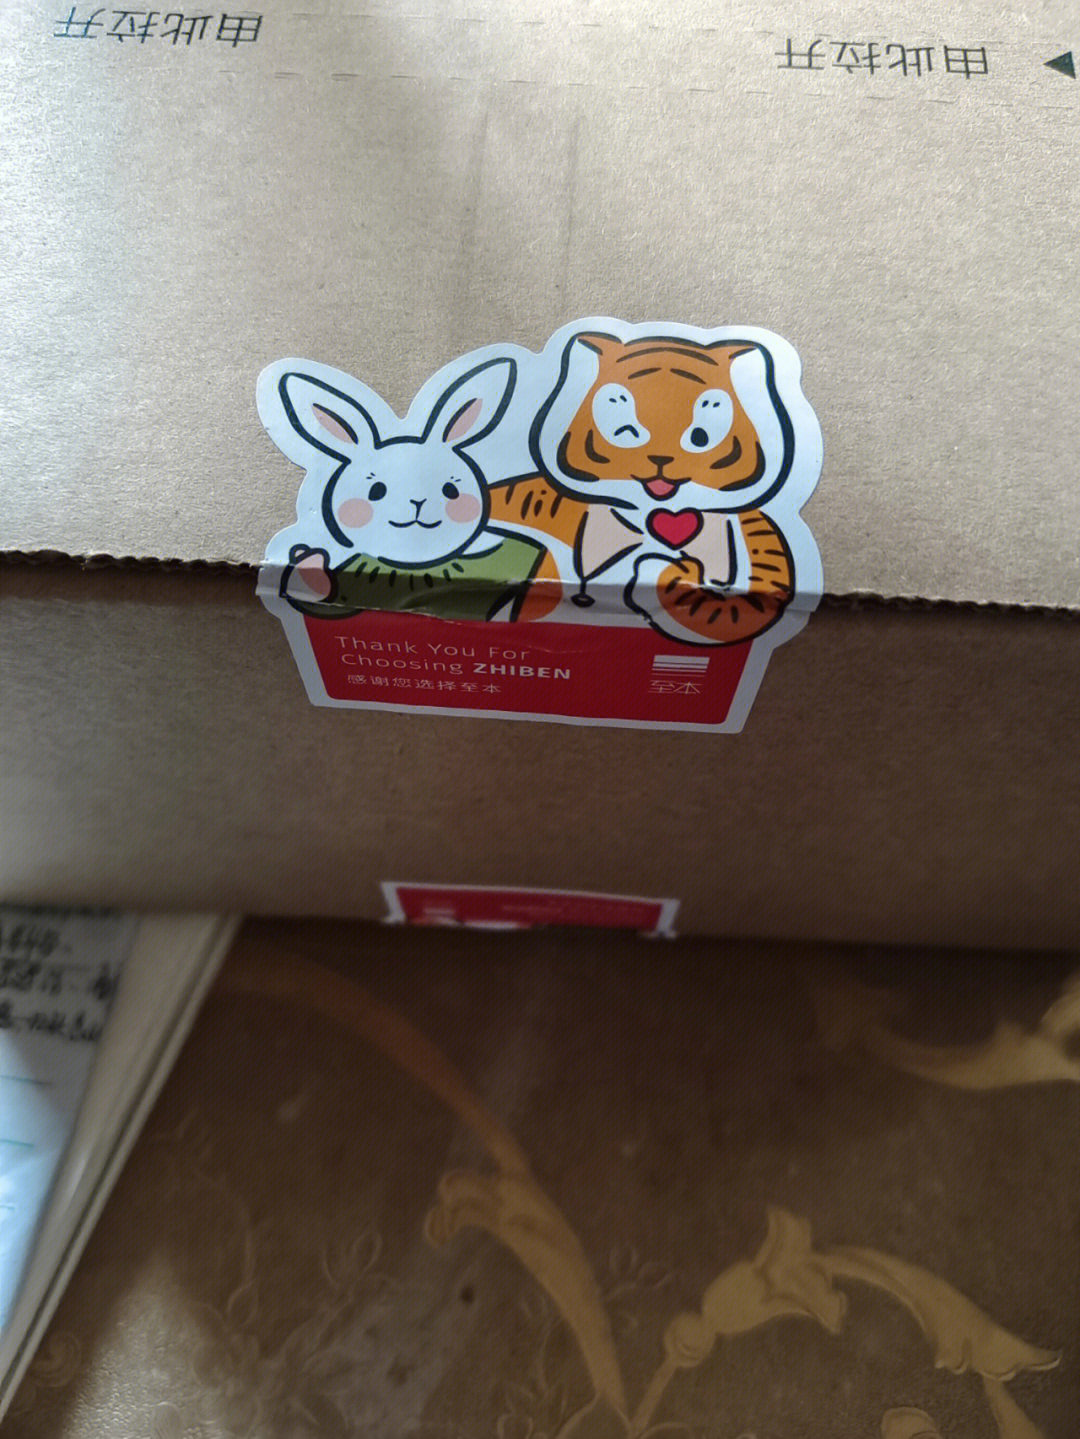 今天收到快递盒一眼就看到了贴纸,好可爱啊,像虎大哥拥抱兔小妹打开